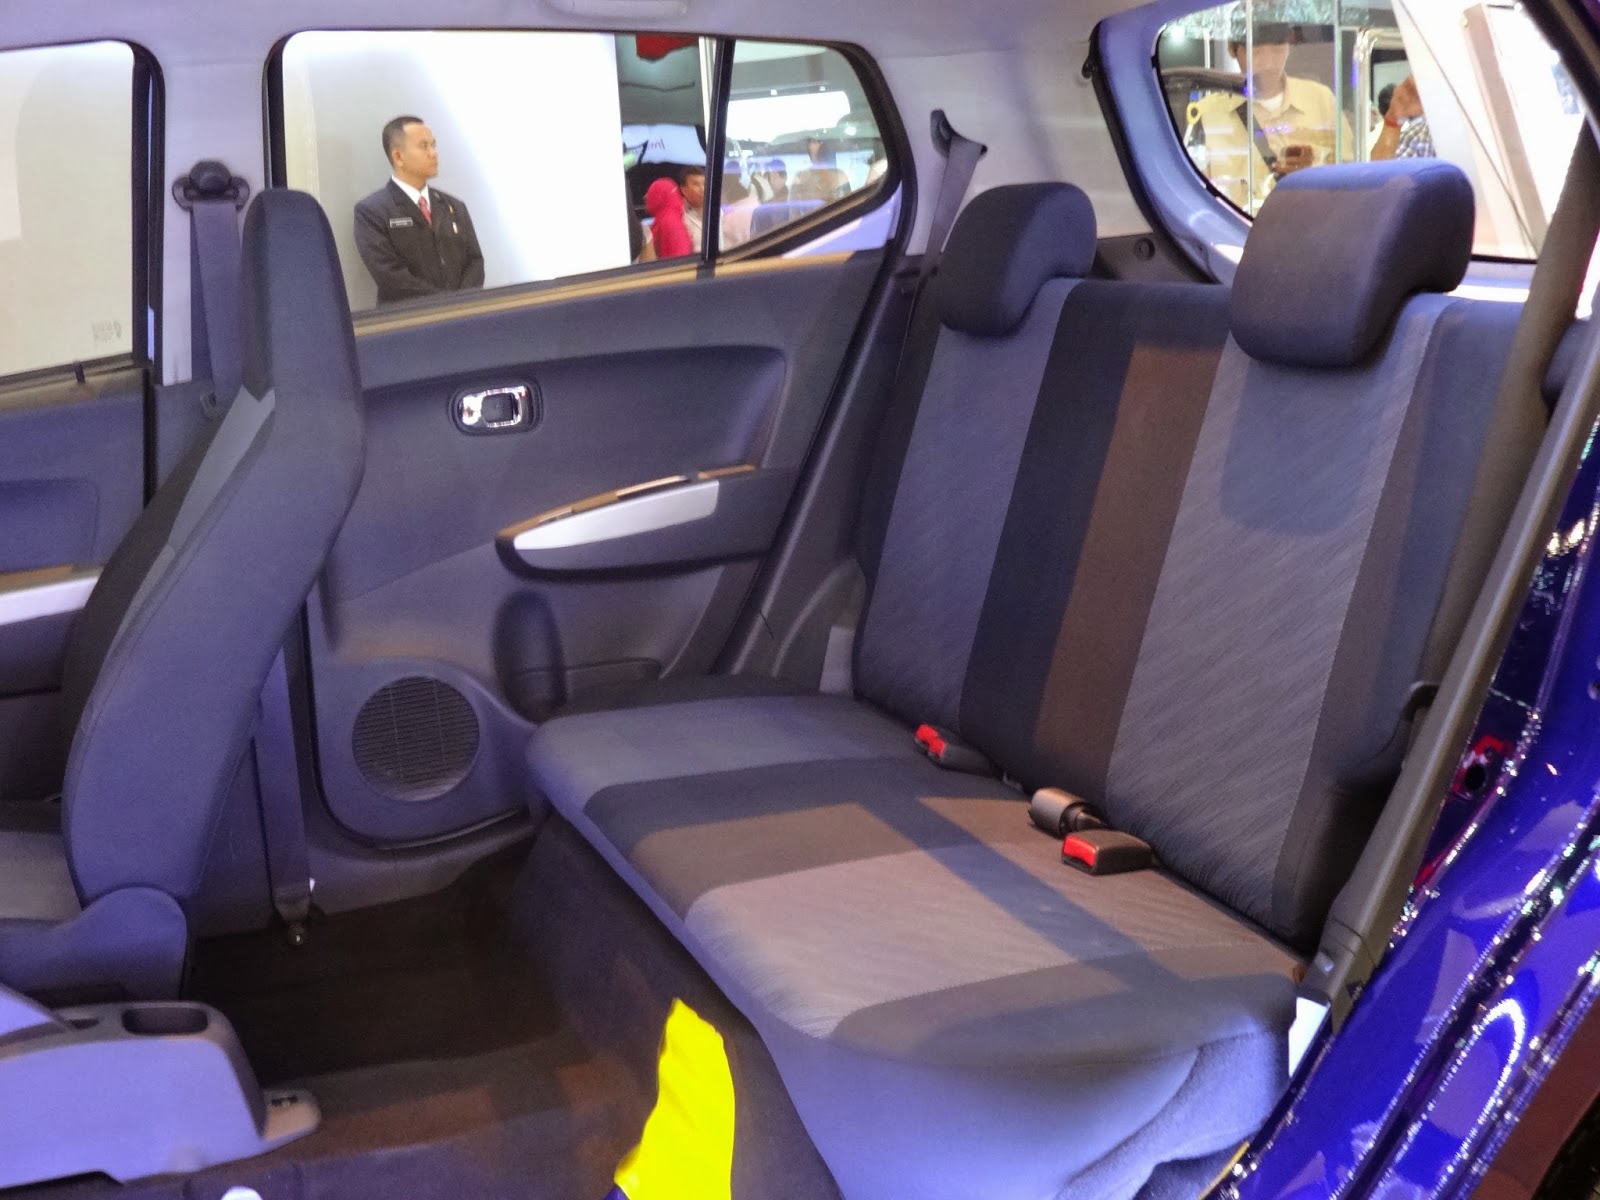 Kumpulan Gambar Modifikasi Interior Mobil Agya Terlengkap Modifikasi Mobil Sedan